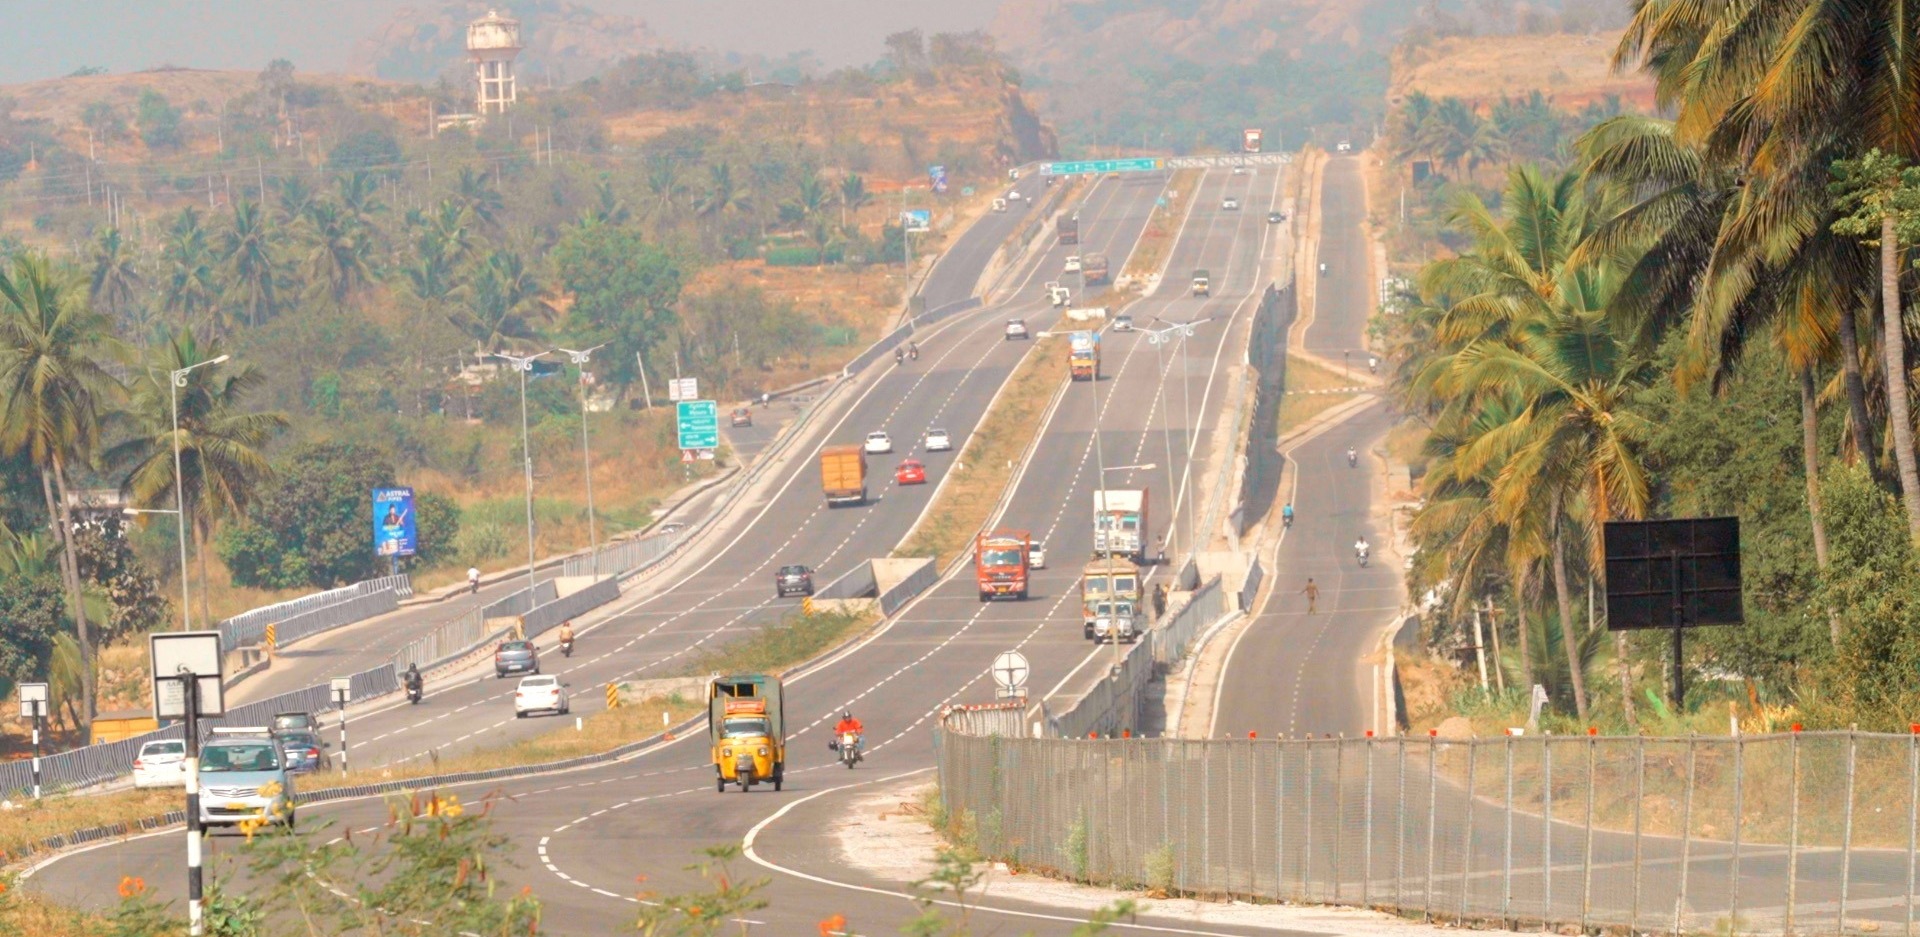 PM Modi inaugurates 118 Km long Bengaluru-Mysuru Expressway project